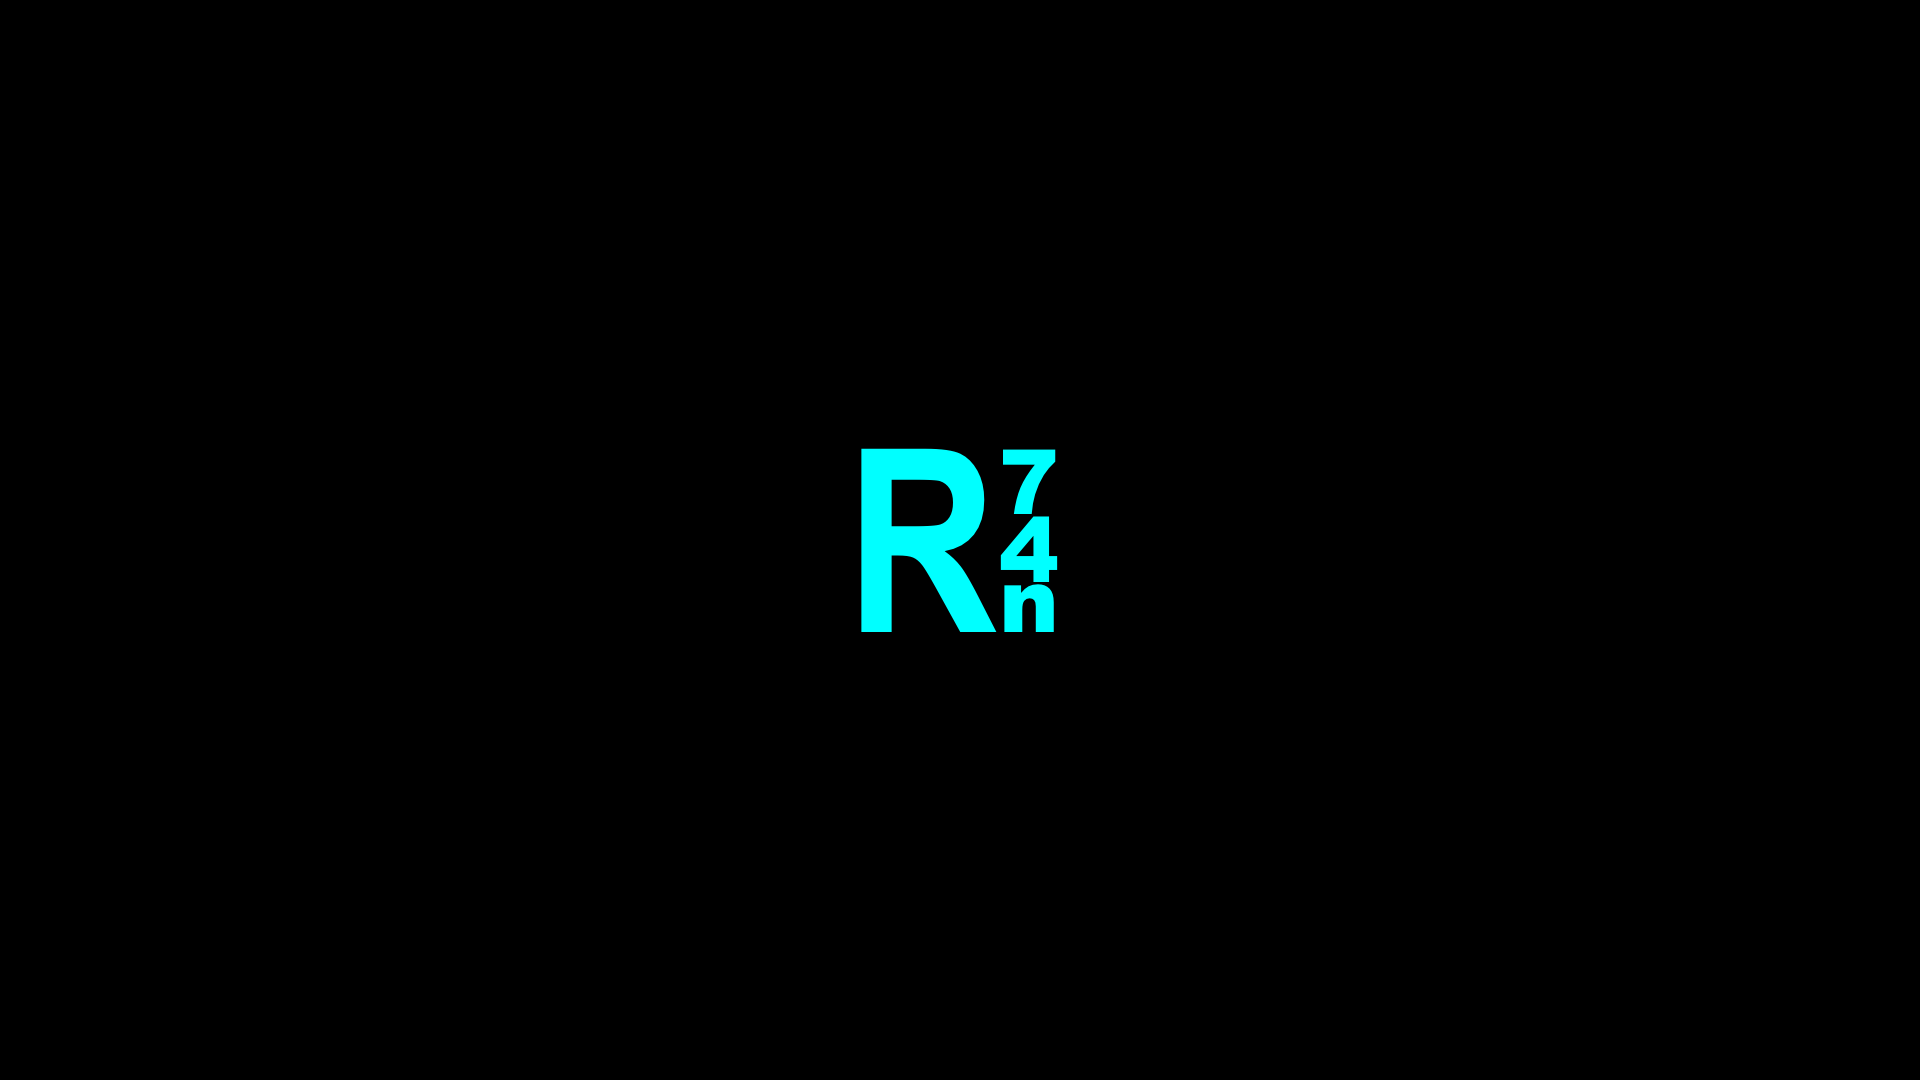 Cyan R74n logo on a black background